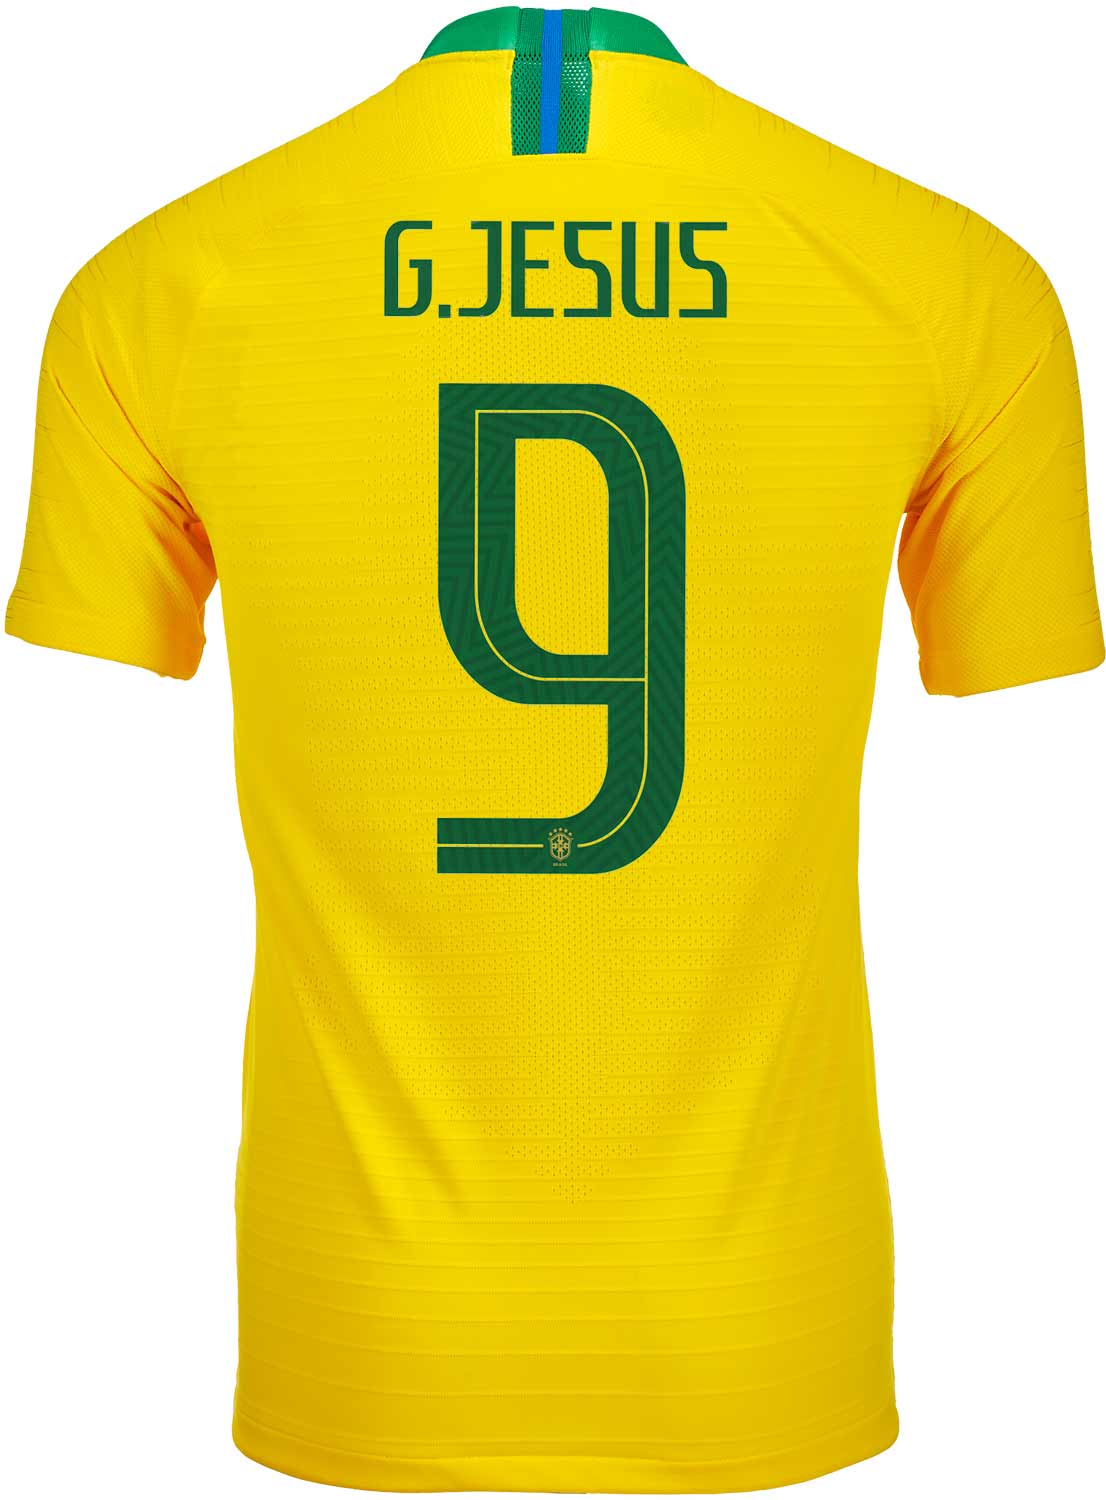 gabriel jesus brazil jersey